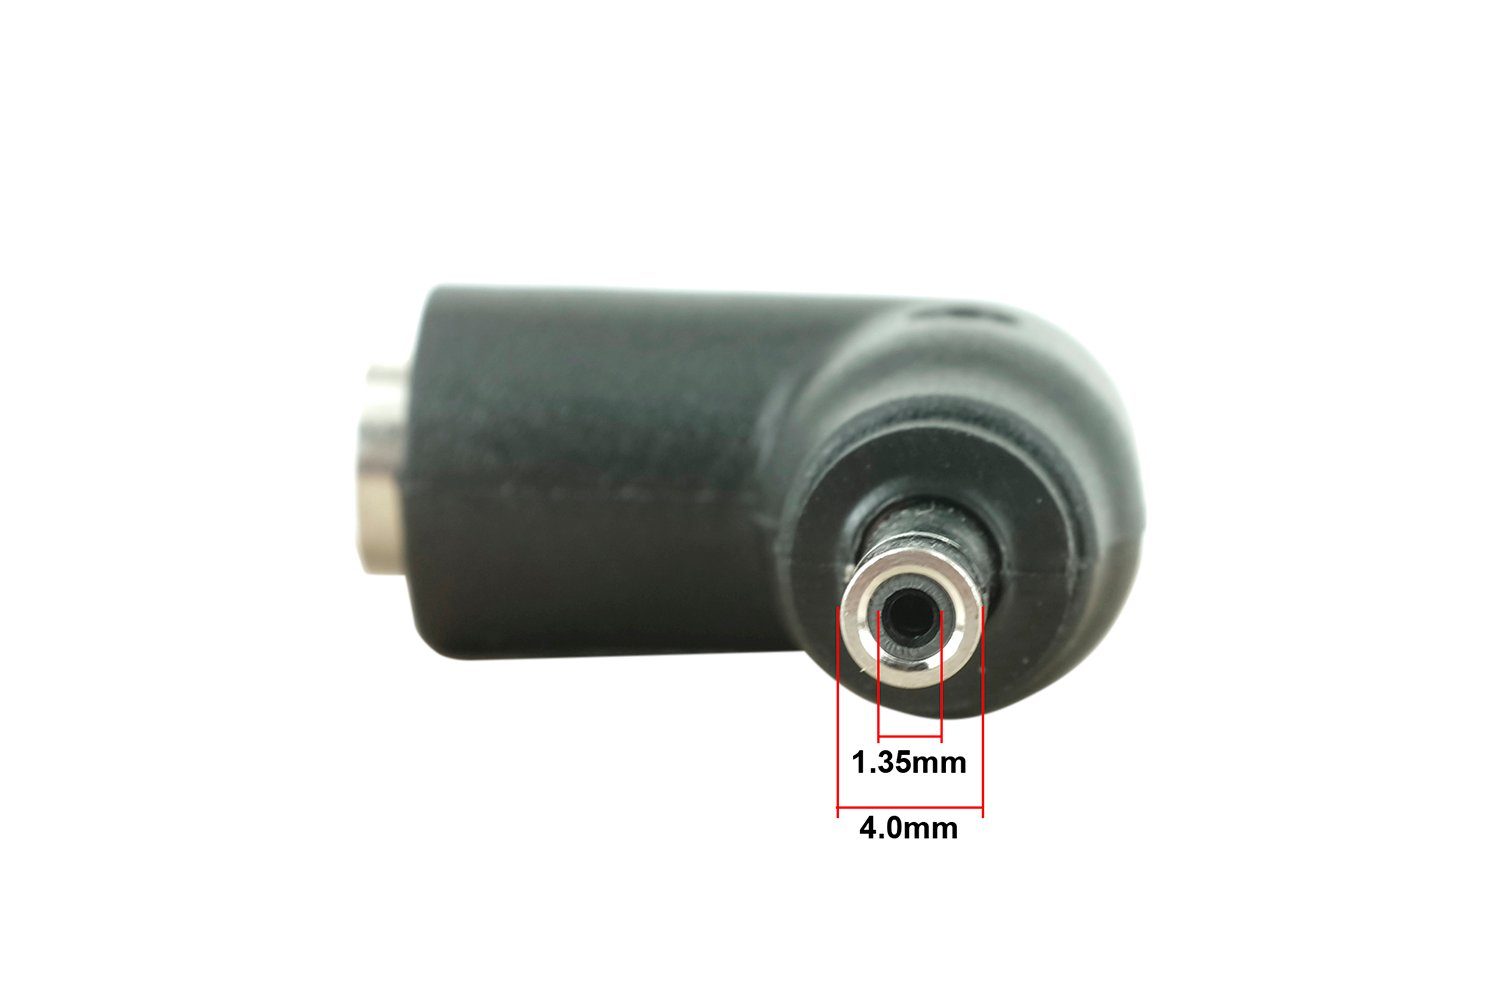 HEAD33N C33-Steckerspitze – mm x Buchse Batterie-Verbindungskabel, PowerSmart 4,0 1,35 5,5 x 2,5 mm Stecker auf